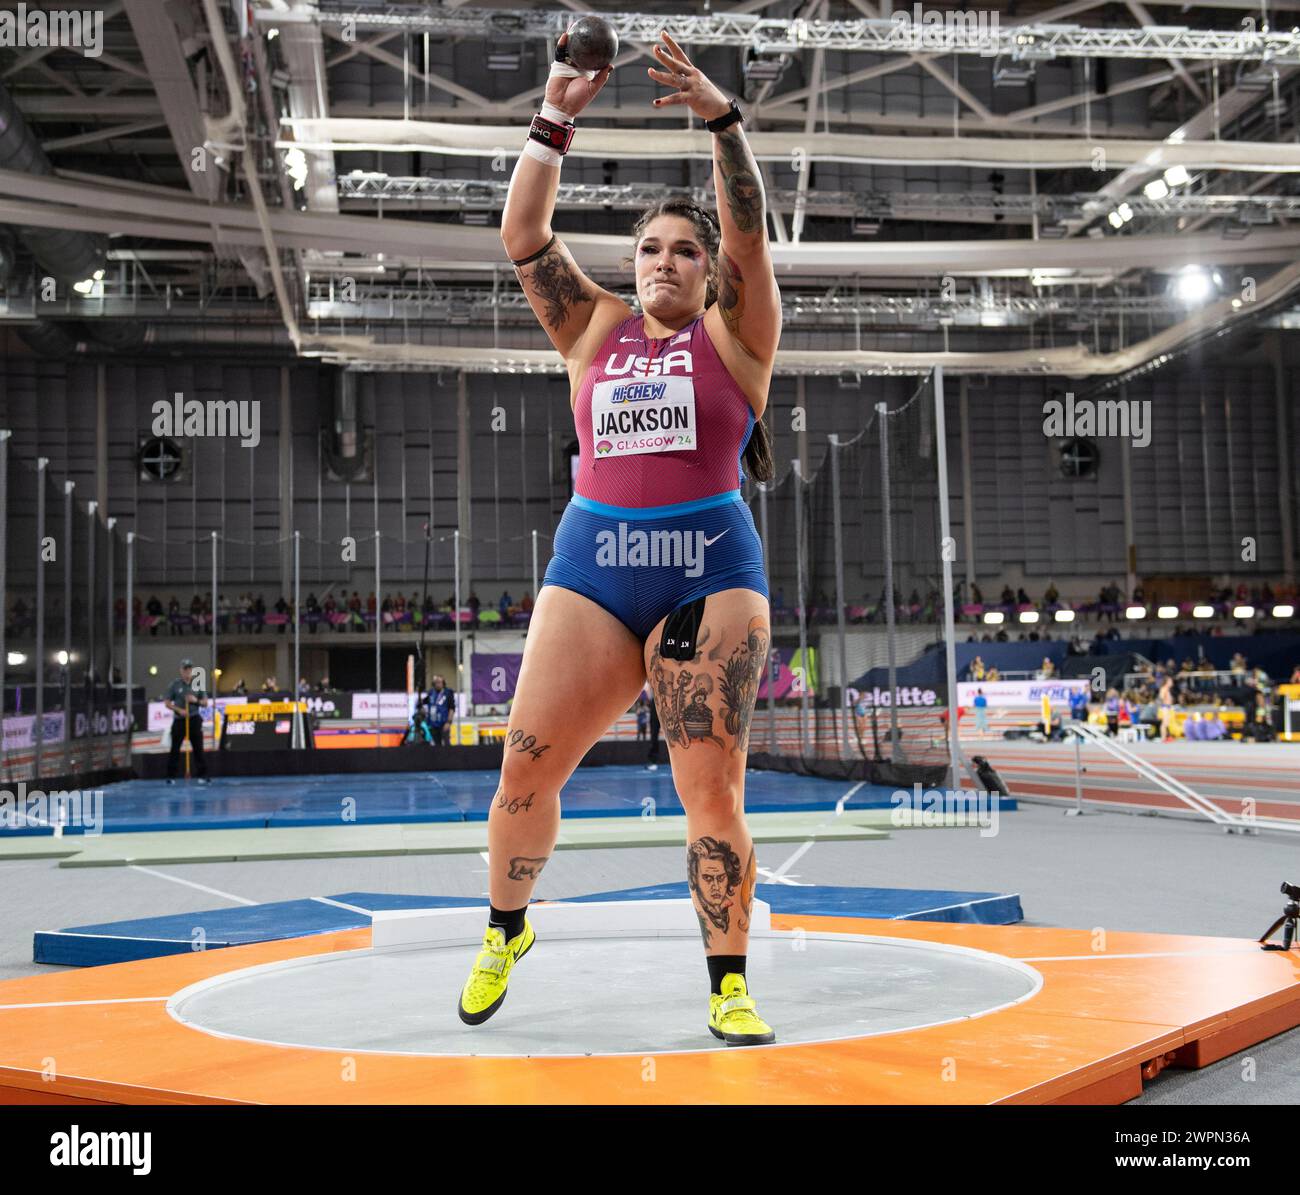 Chase Jackson aus den USA, der beim Frauen-Kugelstoßen bei den Leichtathletik-Hallenweltmeisterschaften in der Emirates Arena, Glasgow, Schottland, Großbritannien antrat. 1./3 Stockfoto